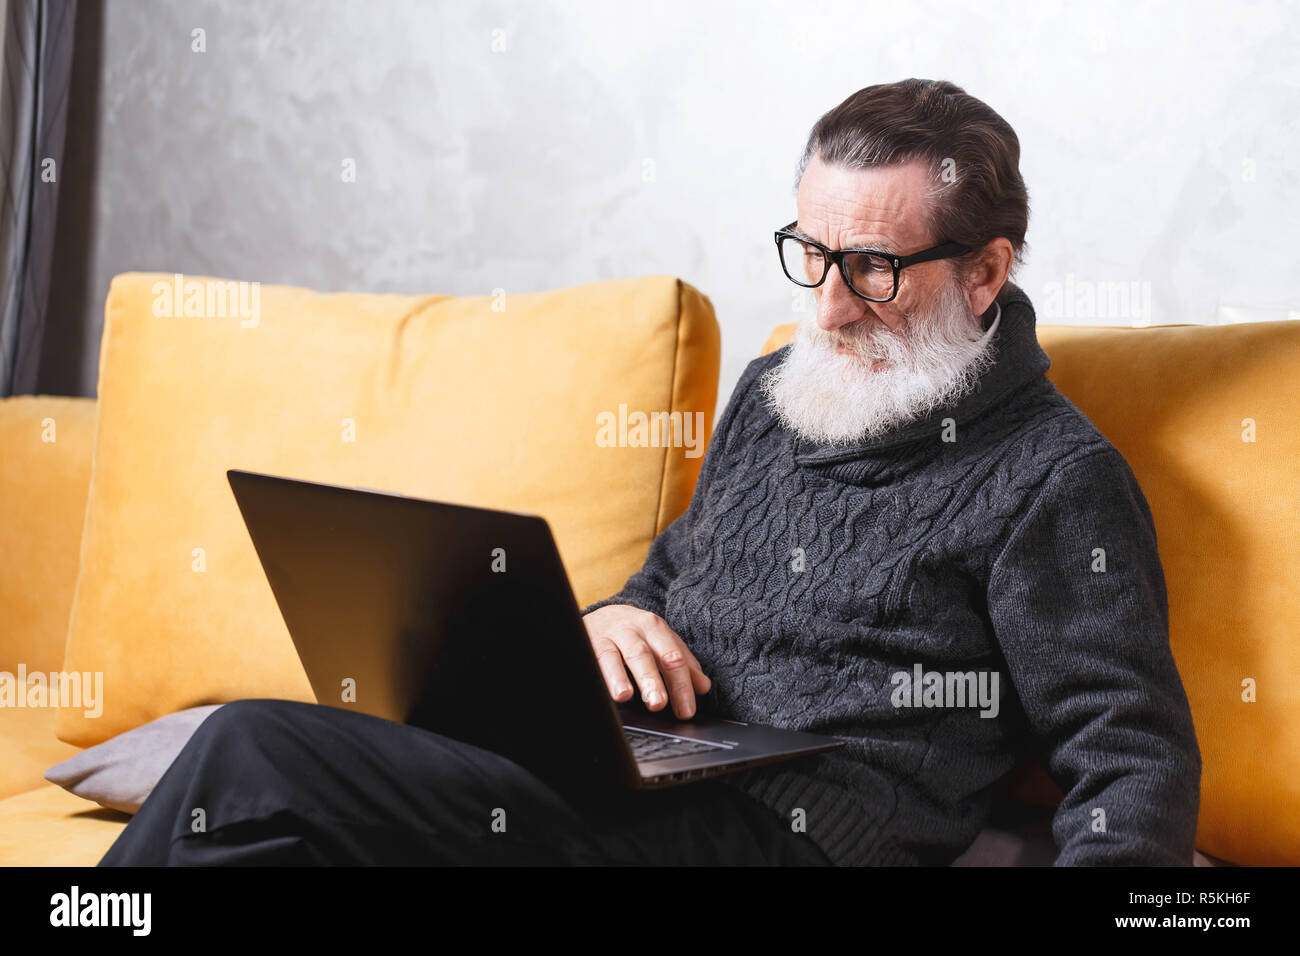 Gut aussehender älterer bärtiger Mann in Gläsern und grauen pullover sitzt mit Laptop auf dem gelben Sofa im Wohnzimmer, moderne Technologie, Kommunikation Konzept Stockfoto